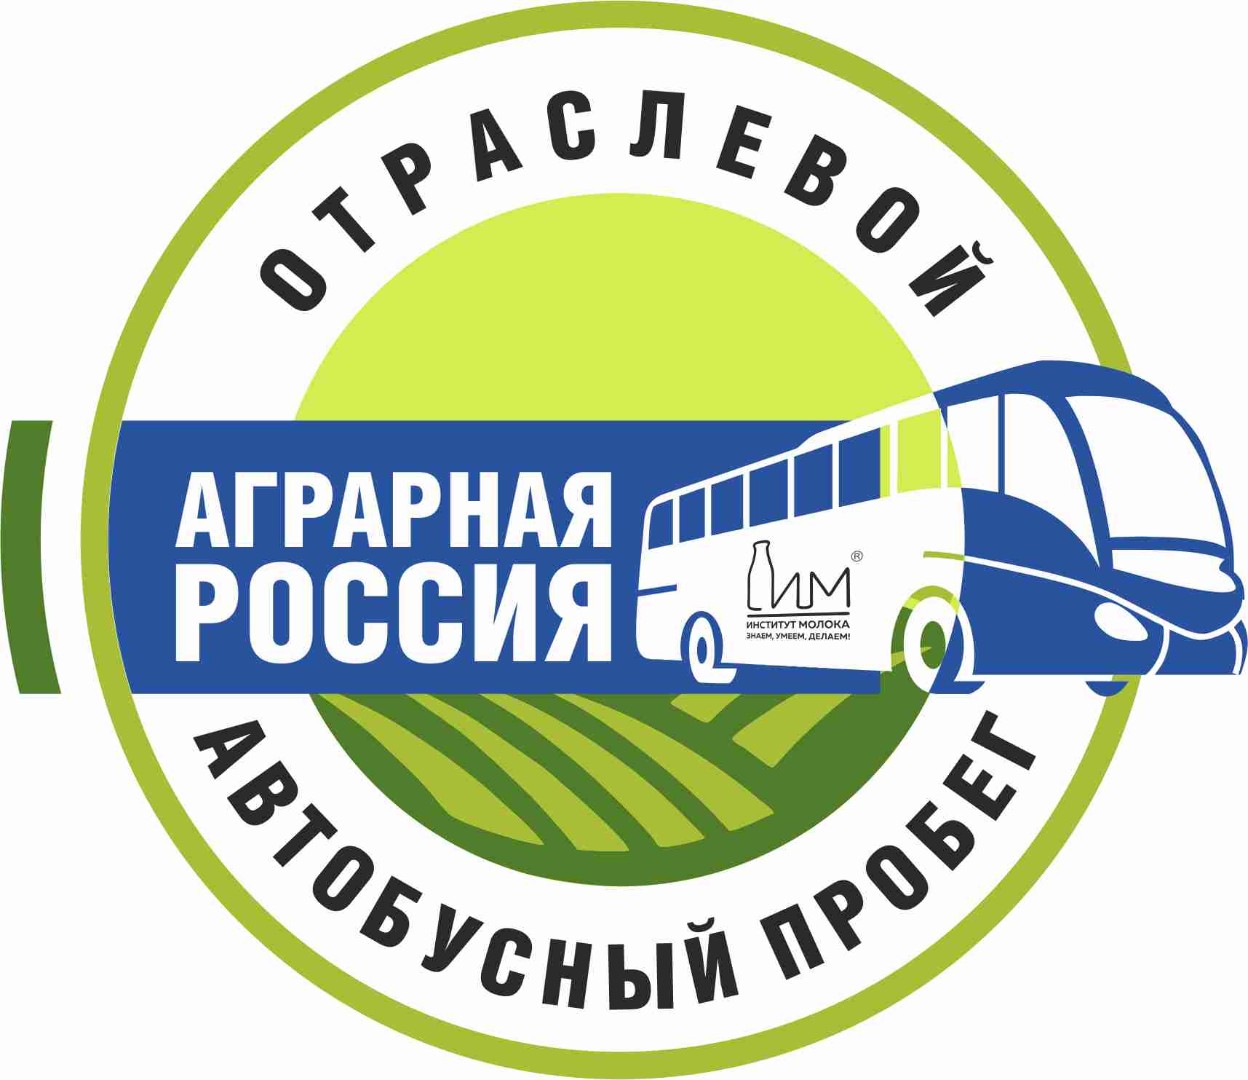 Аграрная Россия автобусный пробег